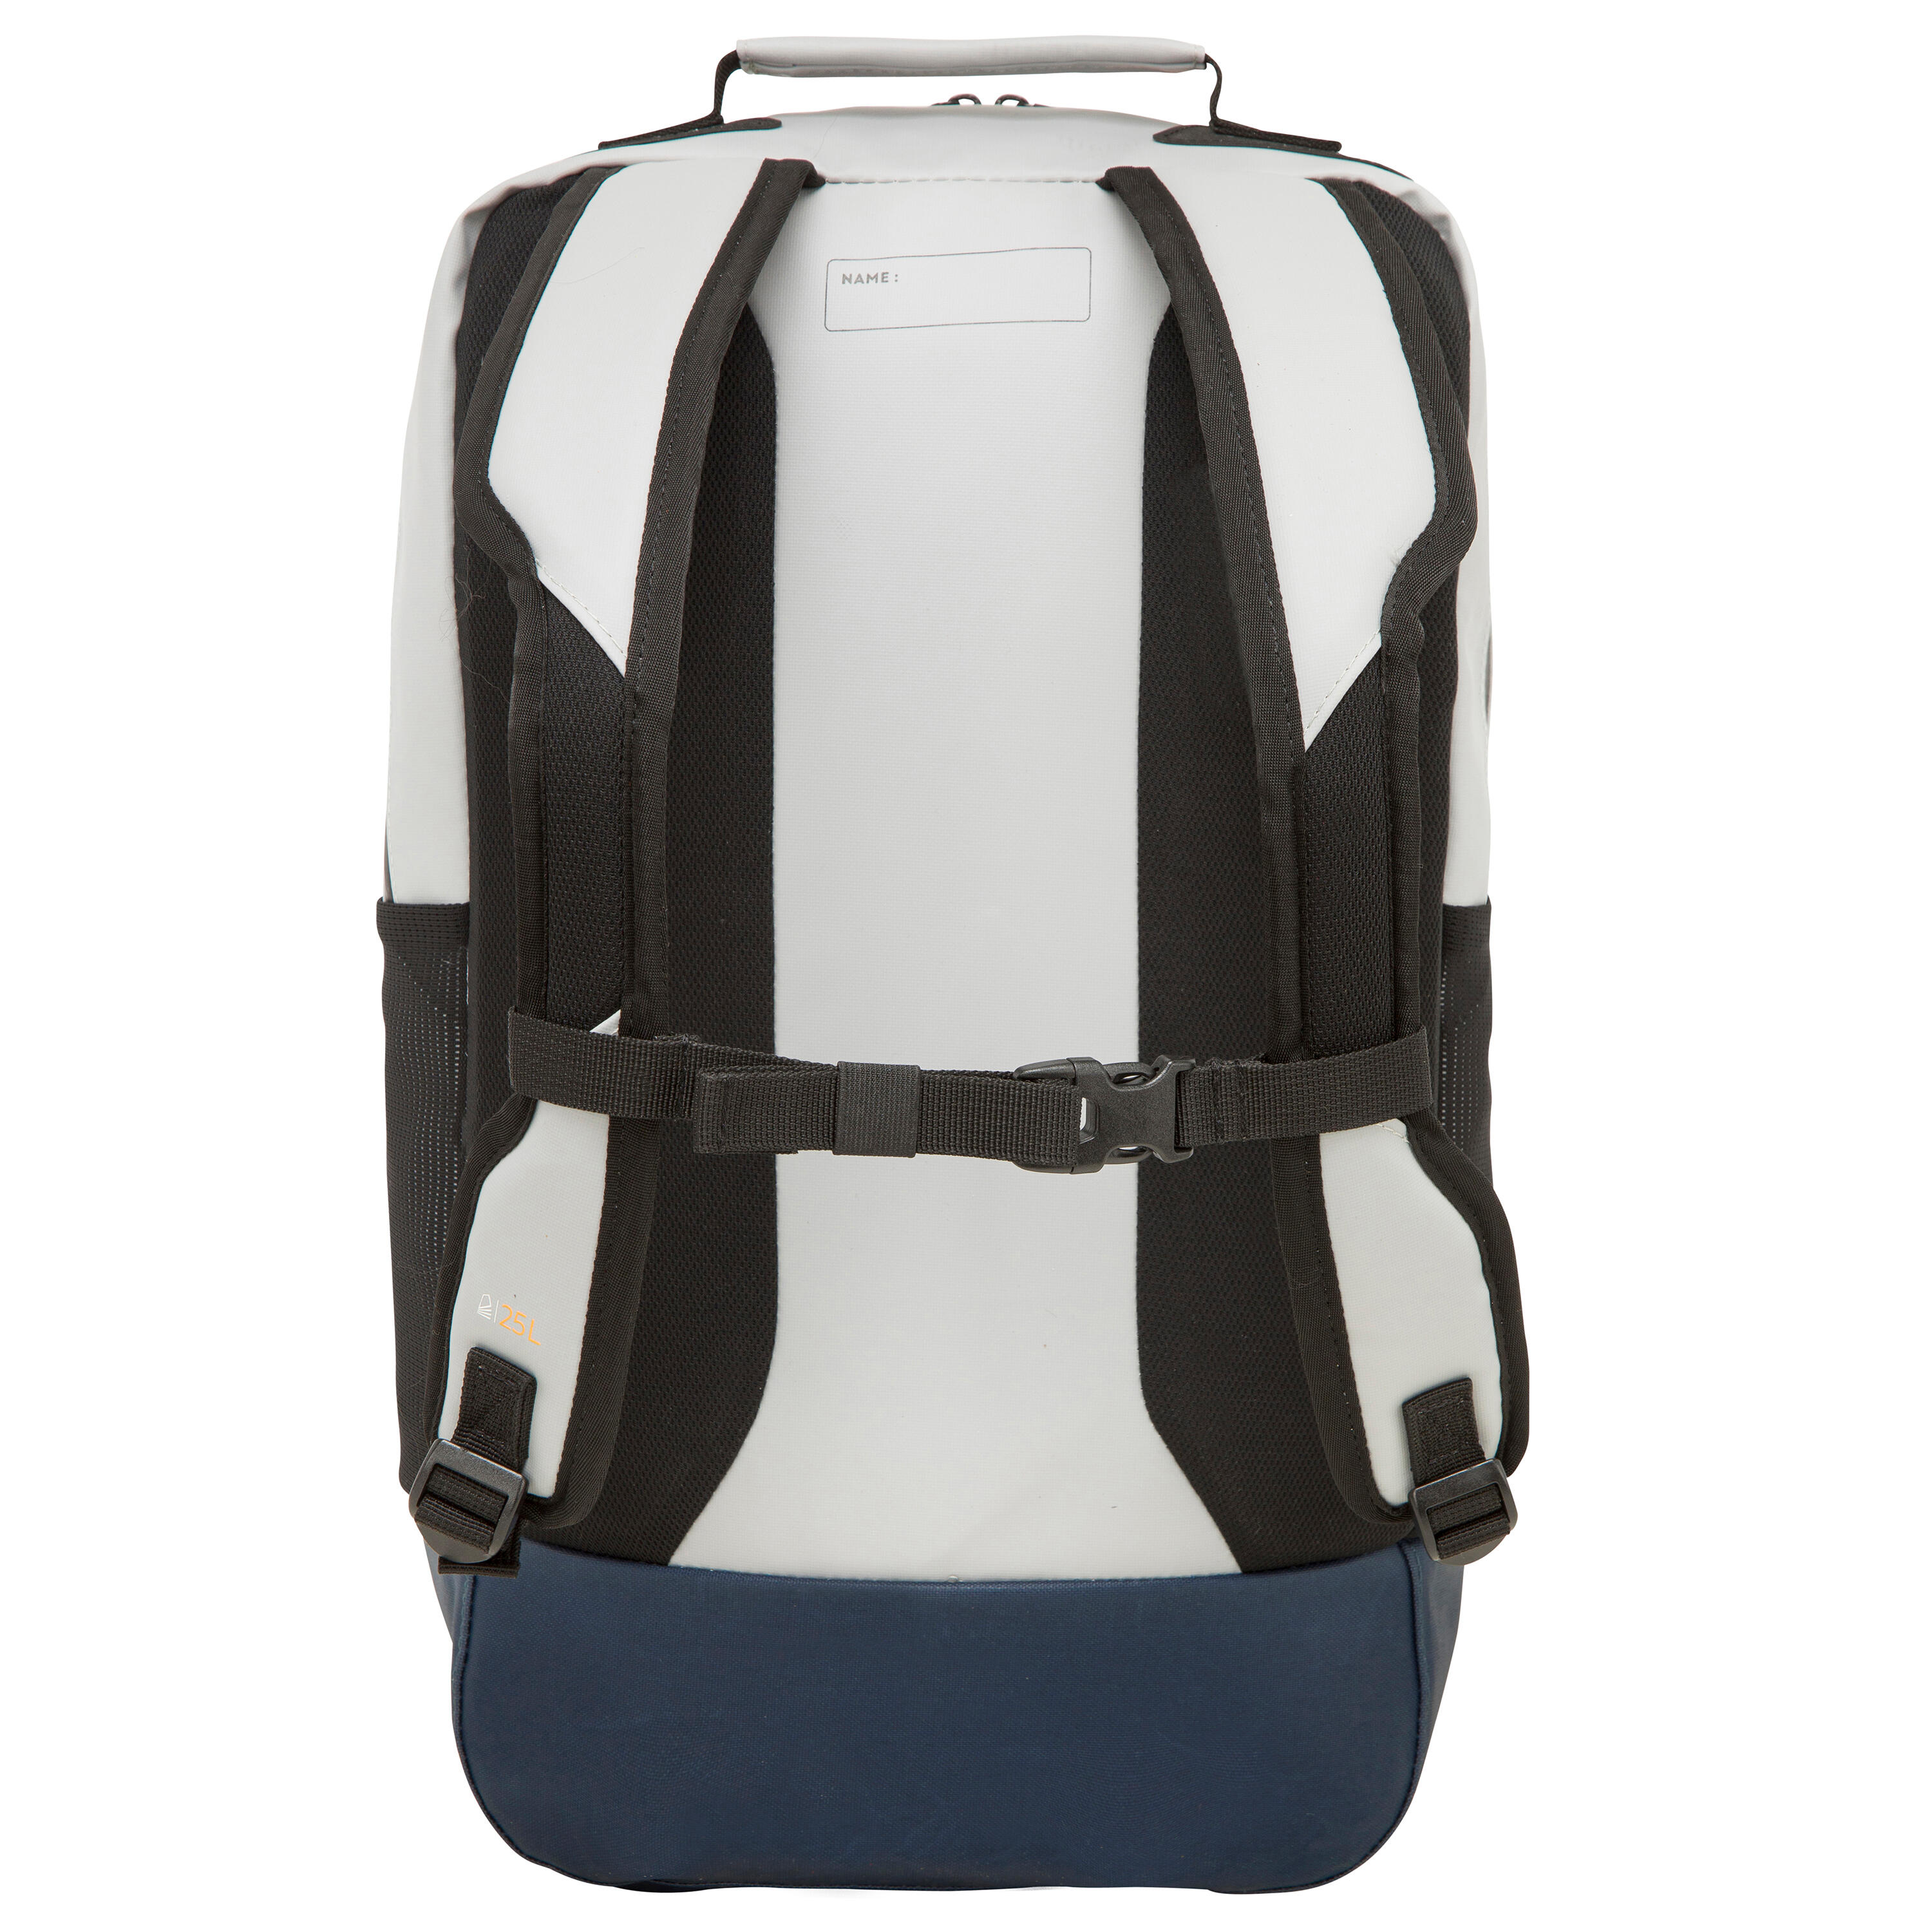 Waterproof backpack 25 L - Grey 4/11